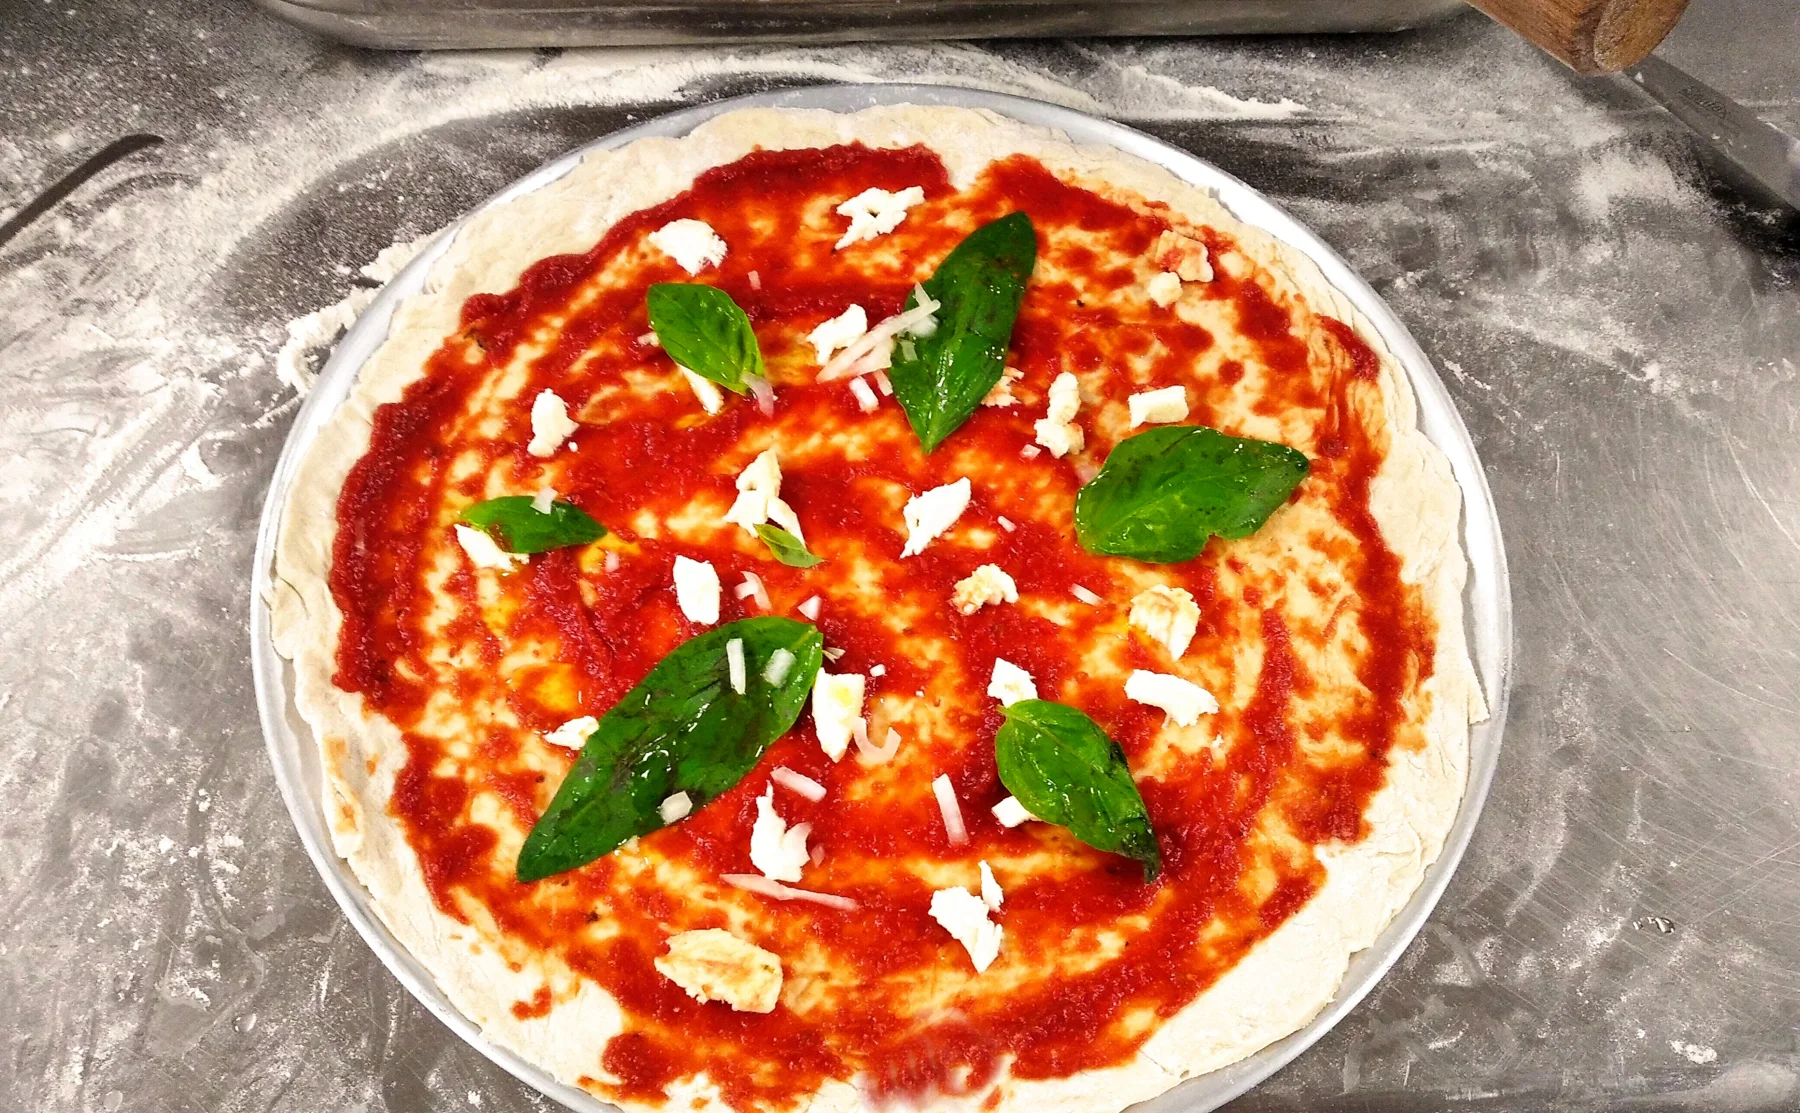 Savoir faire la pizza italienne - 1489013